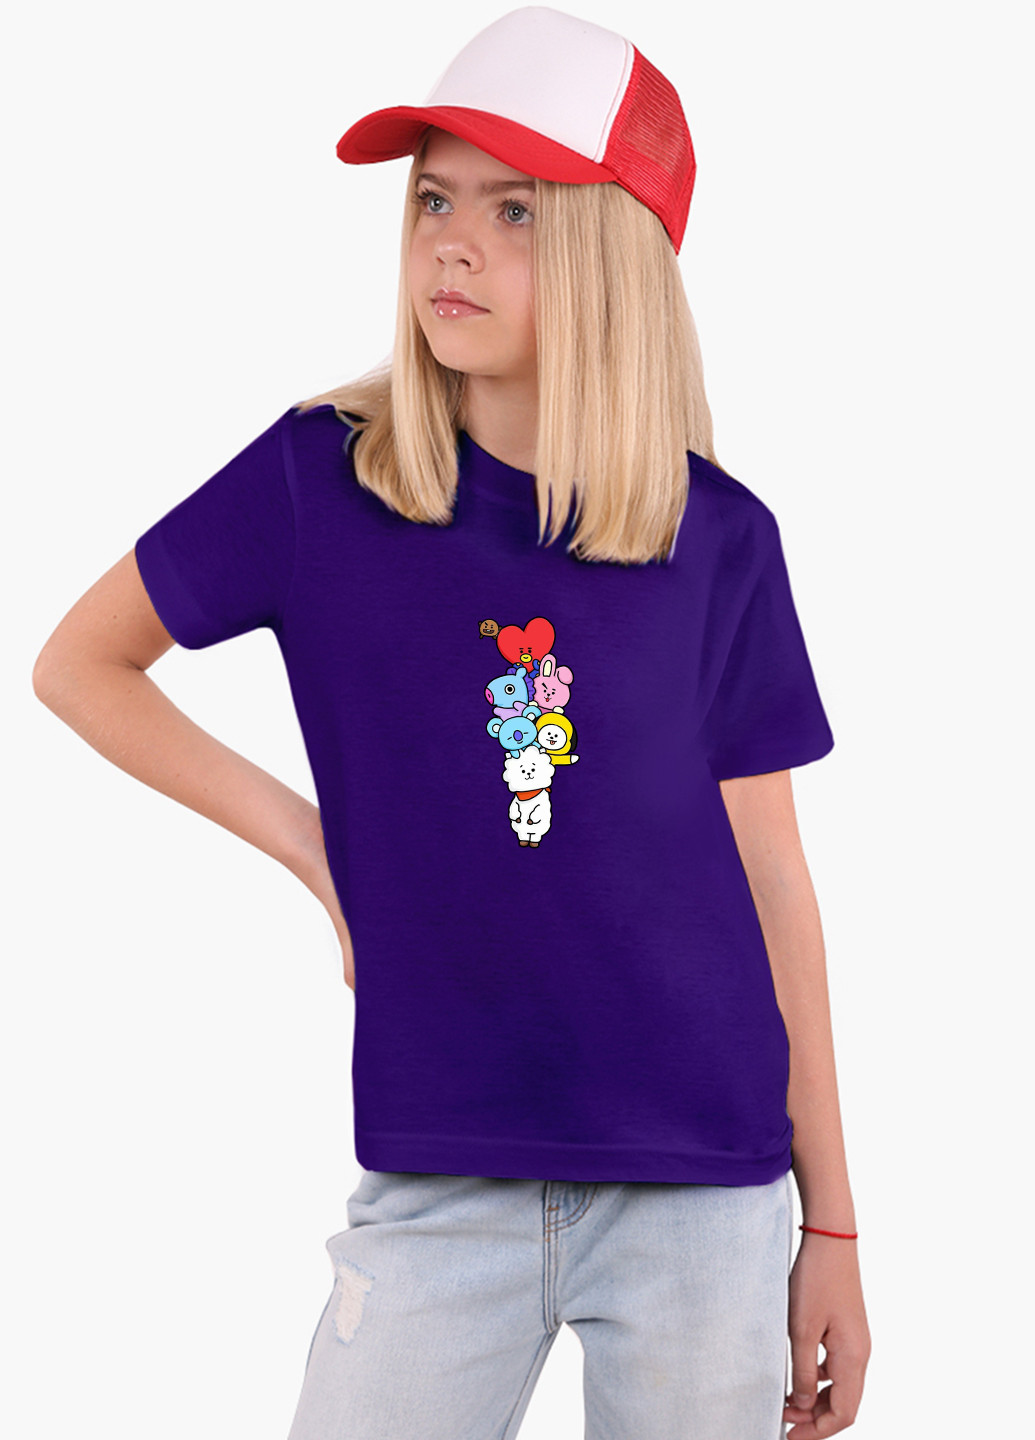 Фиолетовая демисезонная футболка детская бтс (bts)(9224-1064) MobiPrint